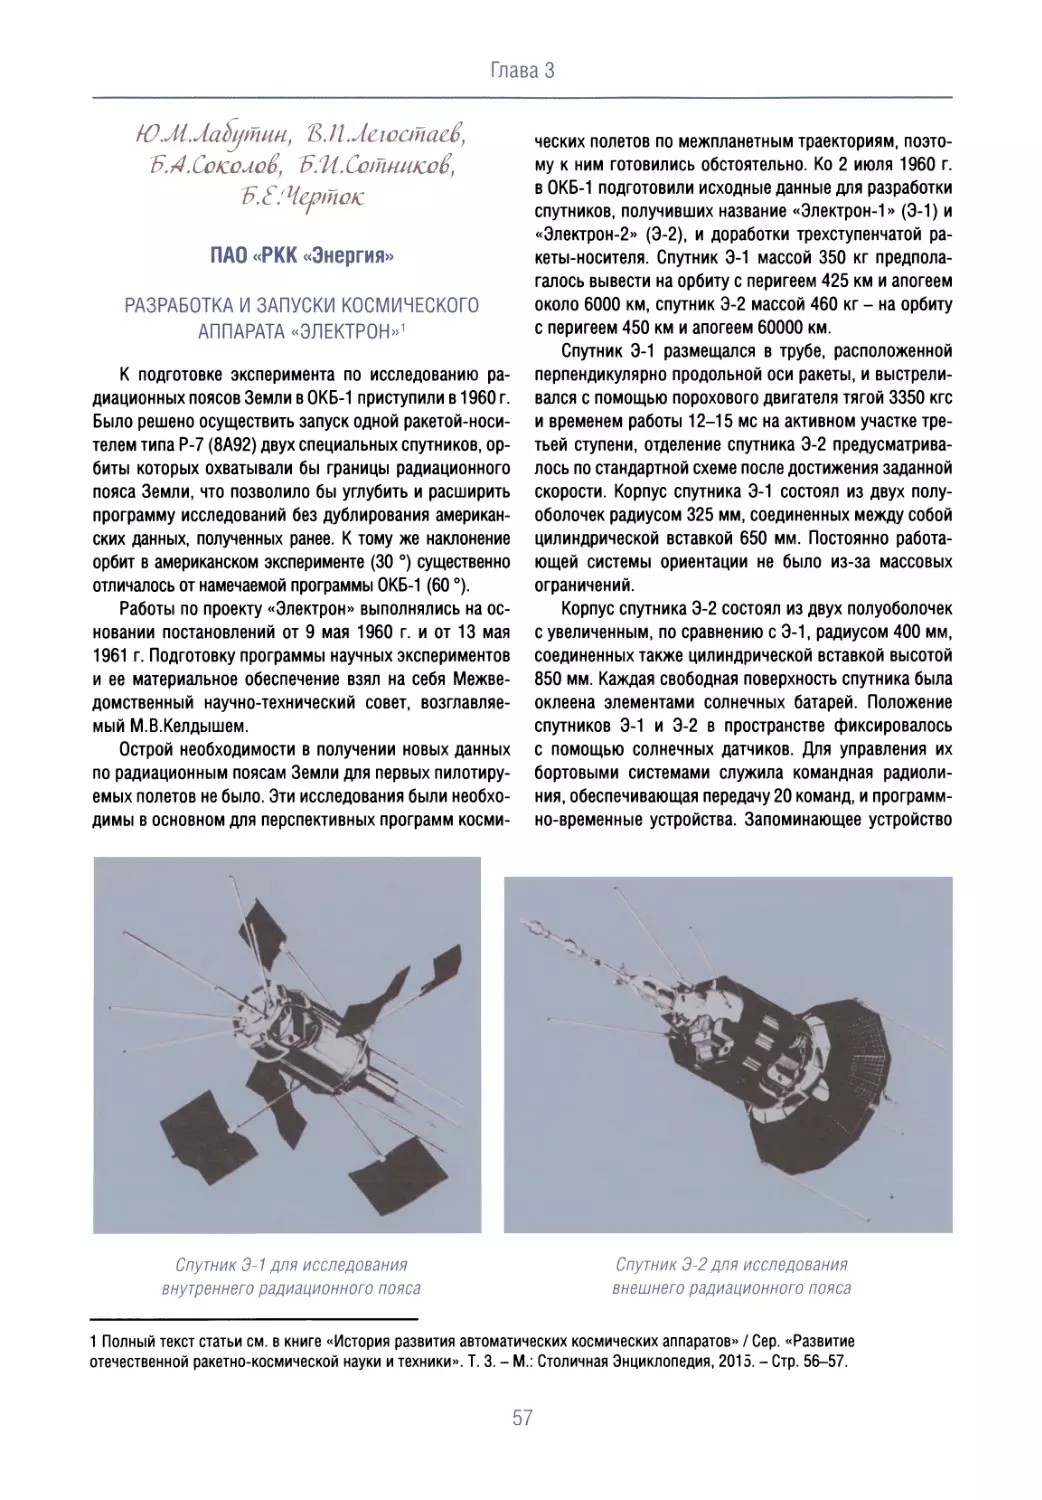 Разработка и запуски космического аппарата «Электрон»